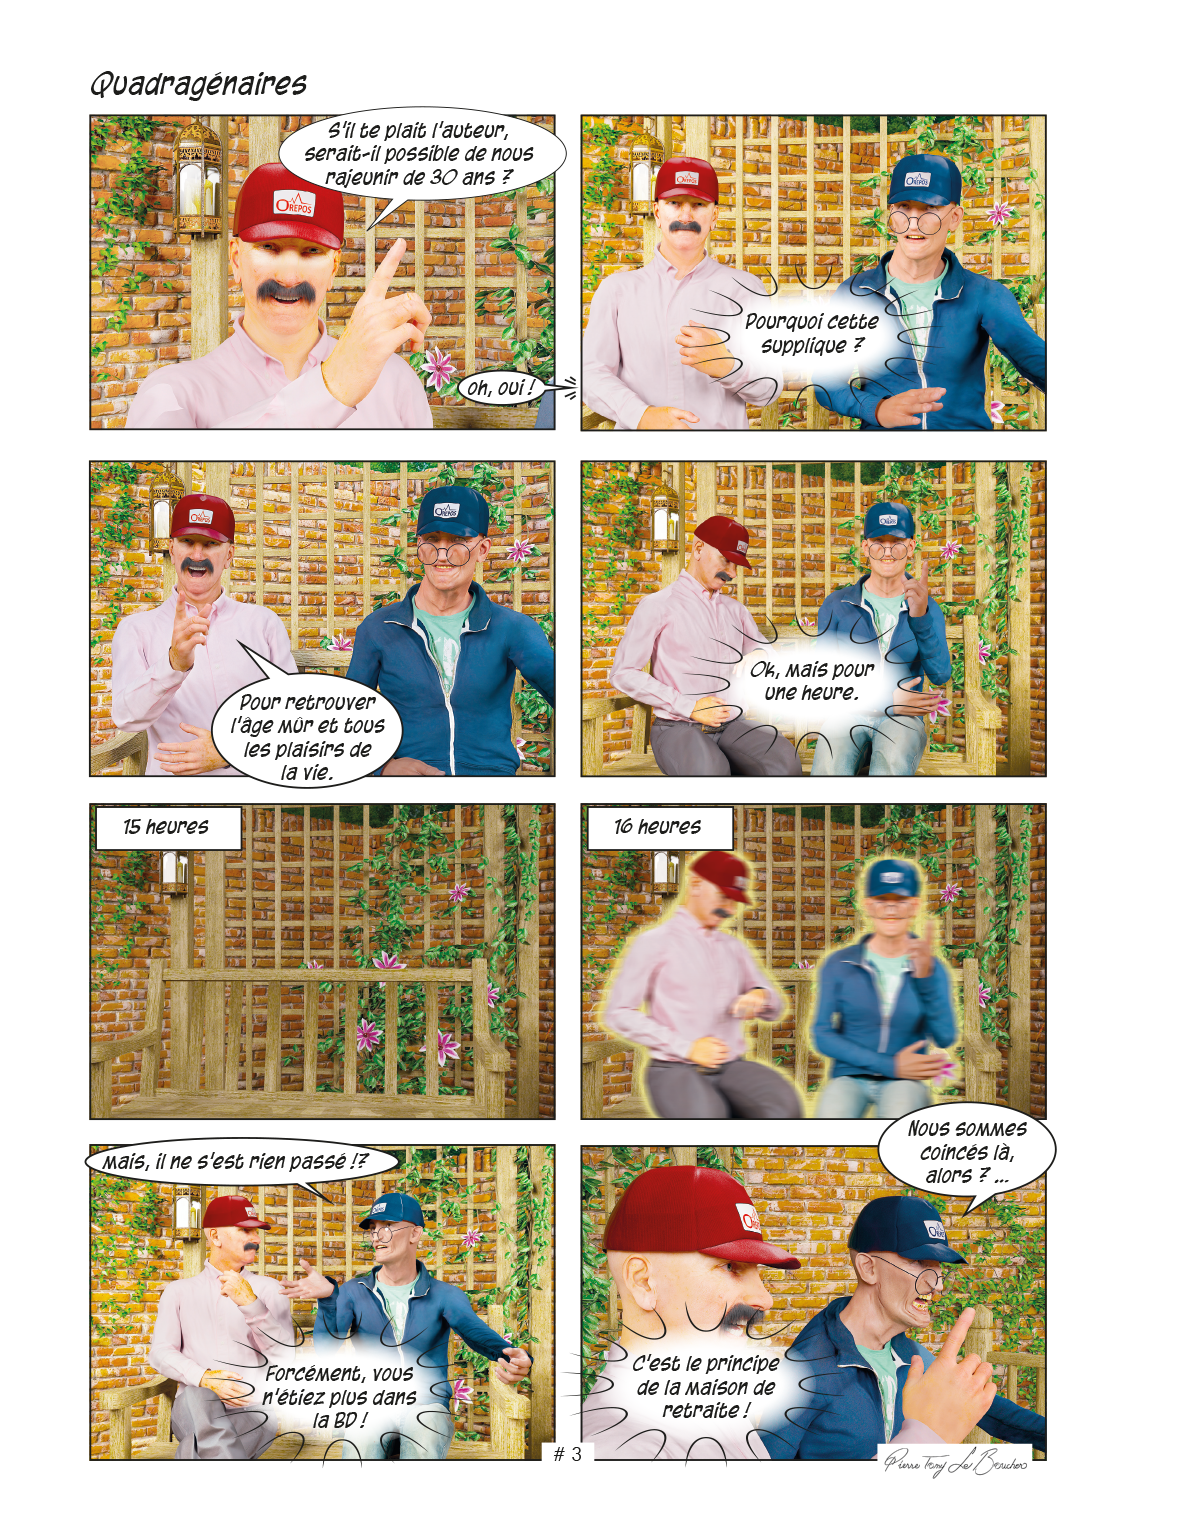 Pierre et Tom, extrait 06 d'une bande dessinée de Pierre Tomy Le Boucher qui se passe dans une maison de retraite.